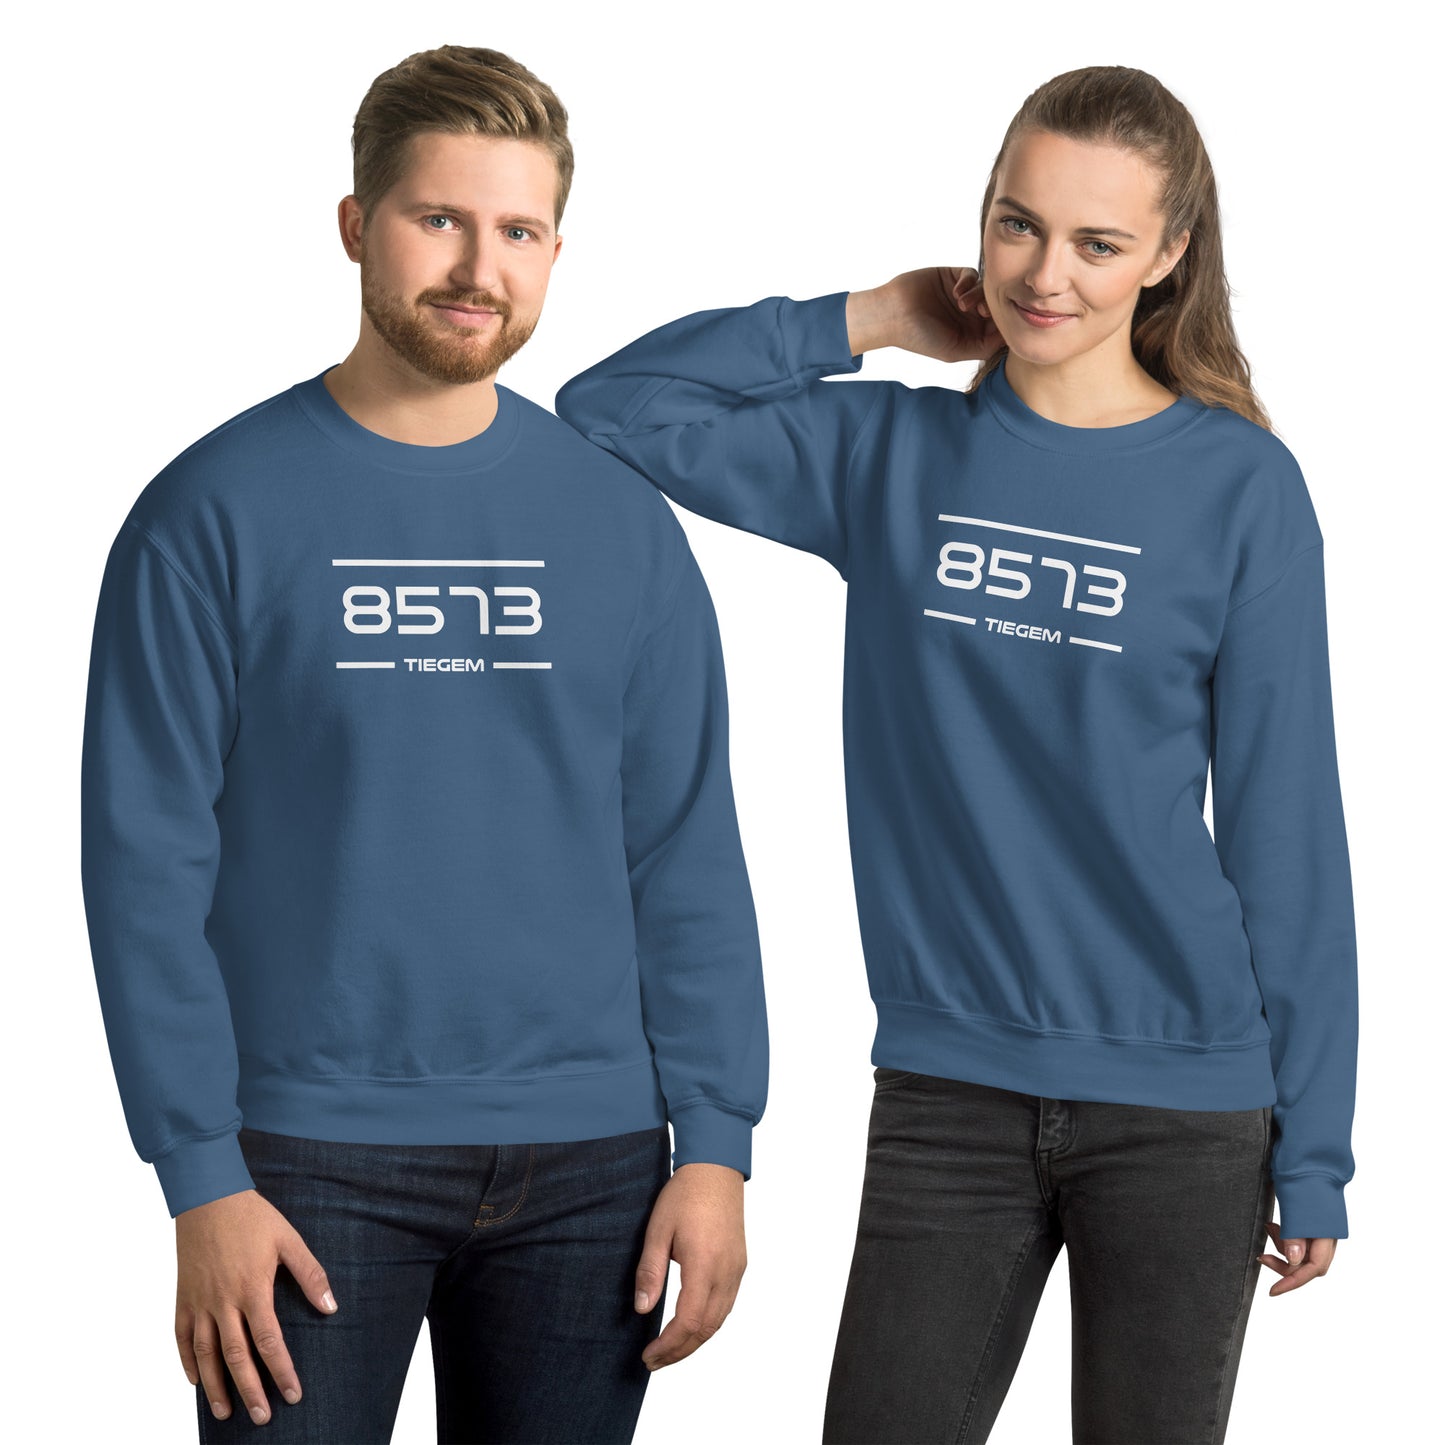 Sweater - 8573 - Tiegem (M/V)